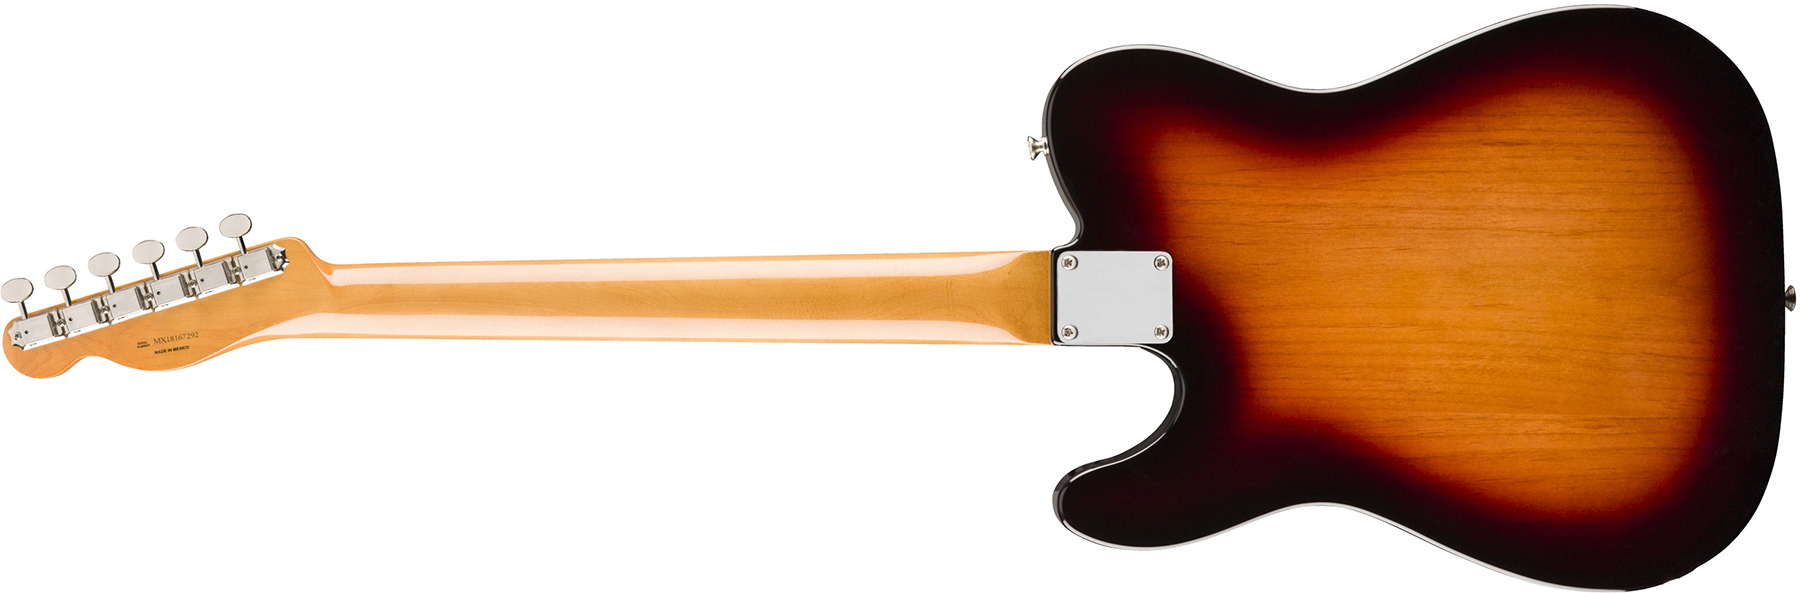 Fender Tele 60s Bigsby Vintera Vintage Mex Pf - 3-color Sunburst - Guitarra eléctrica con forma de tel - Variation 1